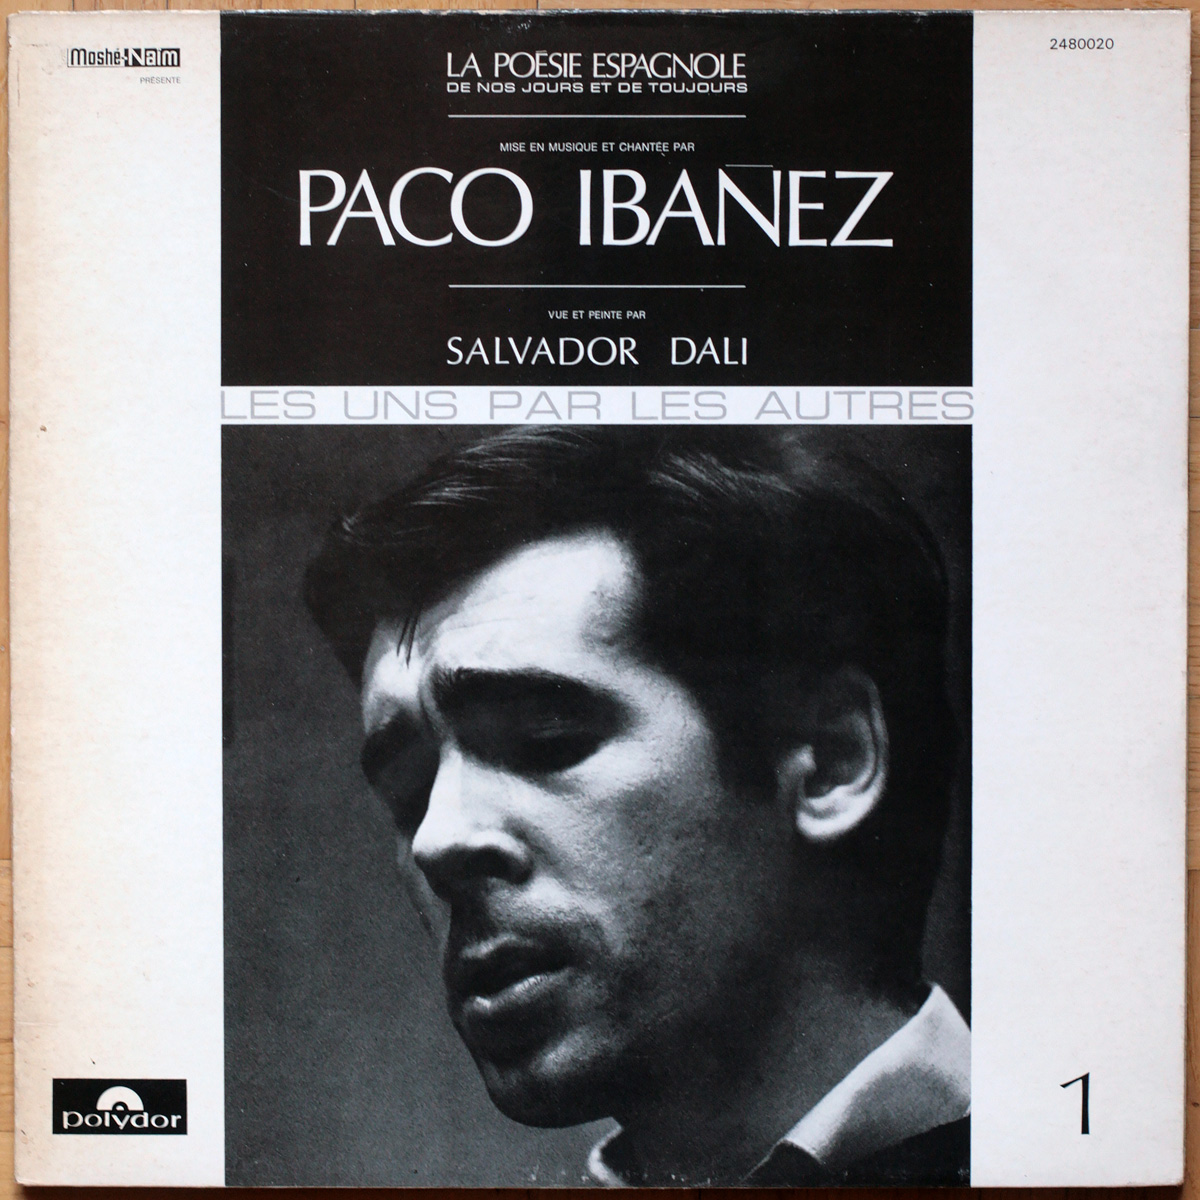 Paco Ibañez • La poésie espagnole de nos jours et de toujours • Vol. 1 • Federico García Lorca • Luis De Góngora